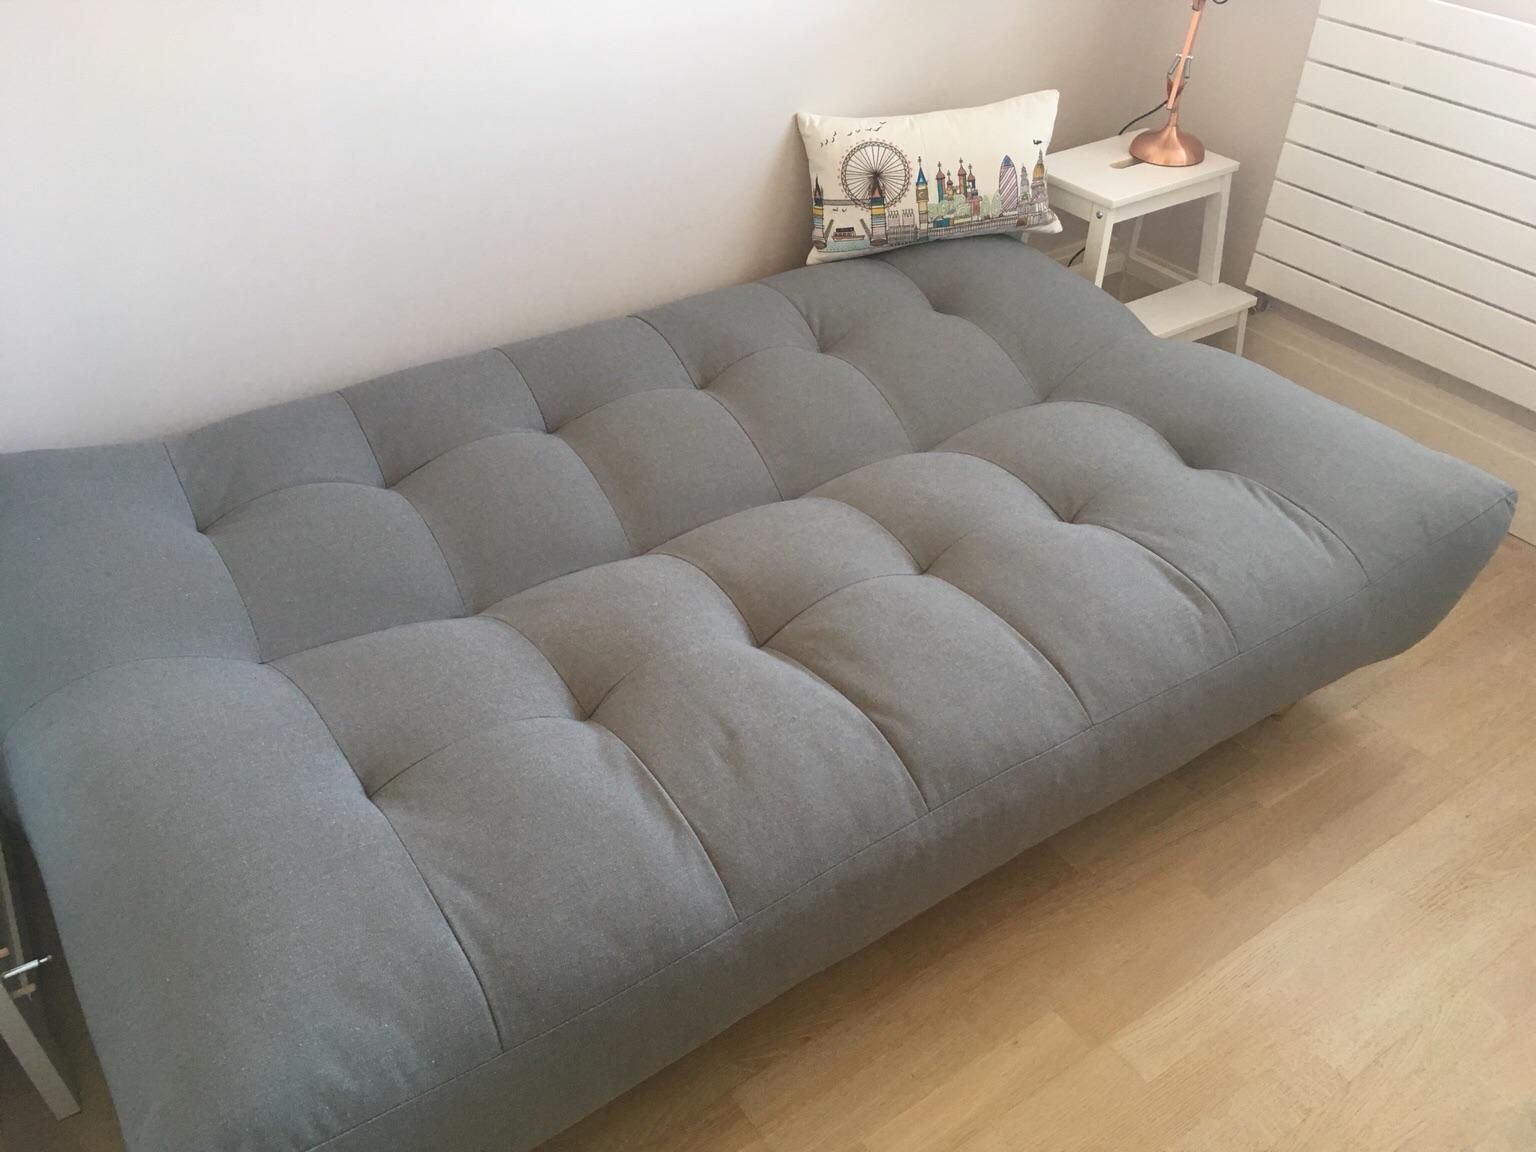 habitat italiana sofa bed